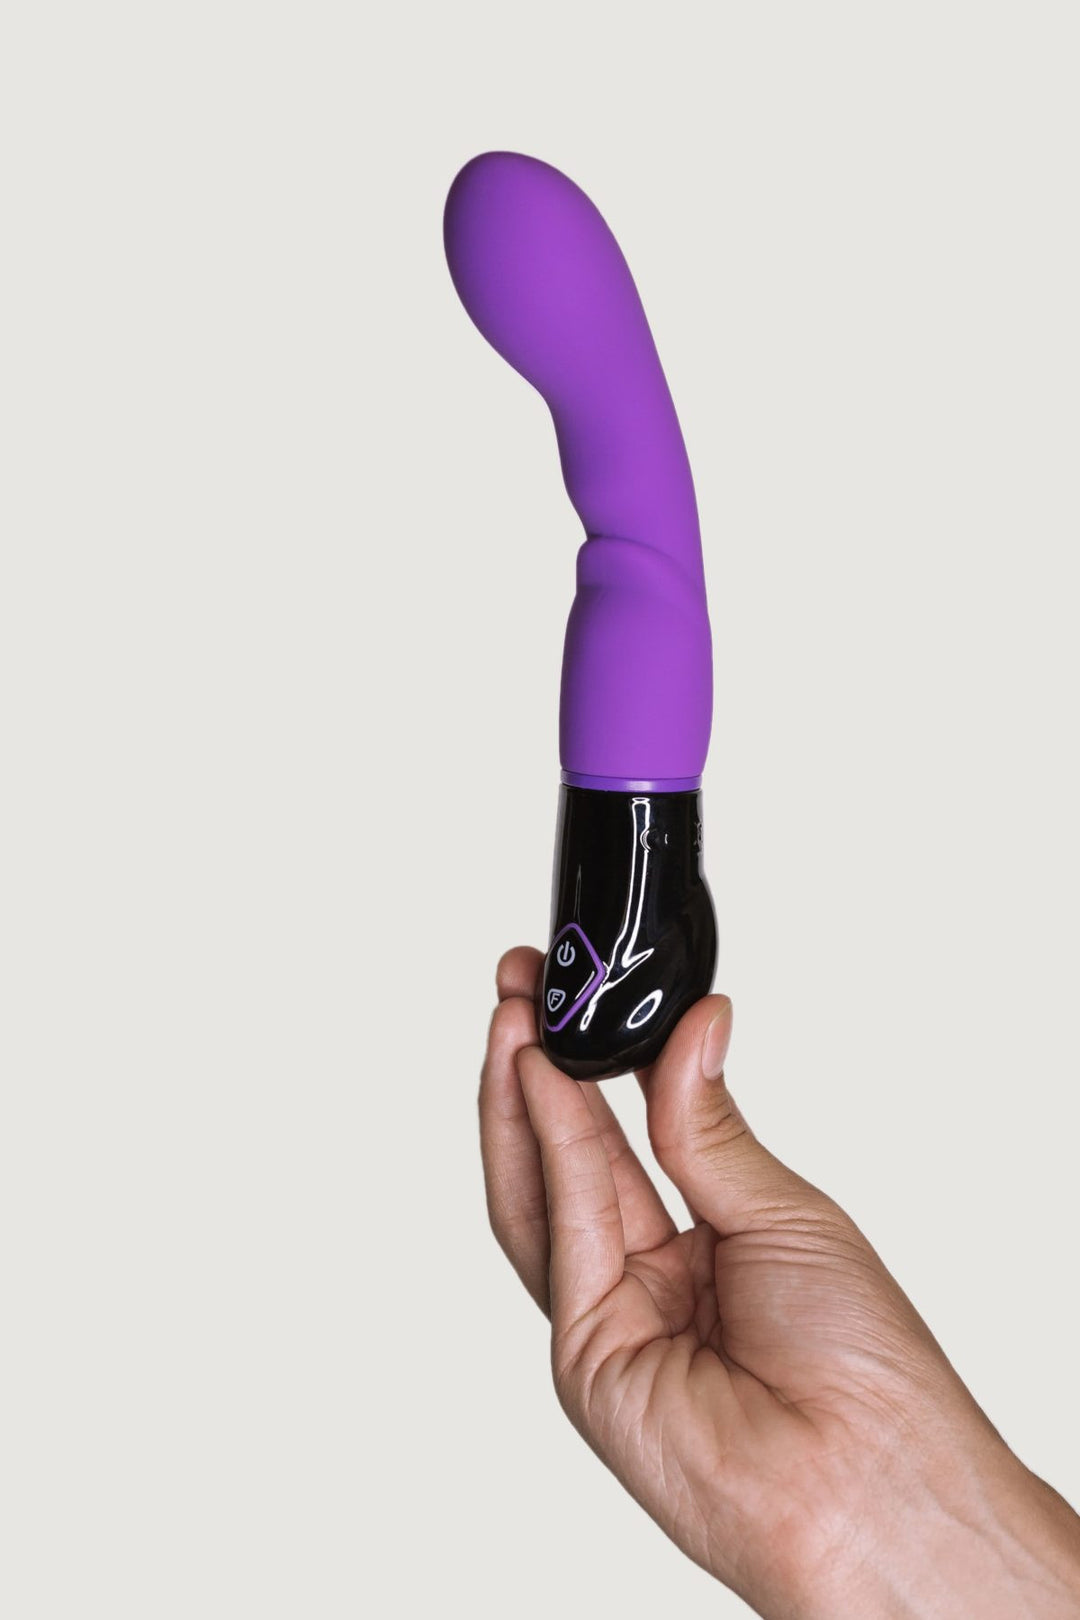 Nyx G-spot vaginal vibrator